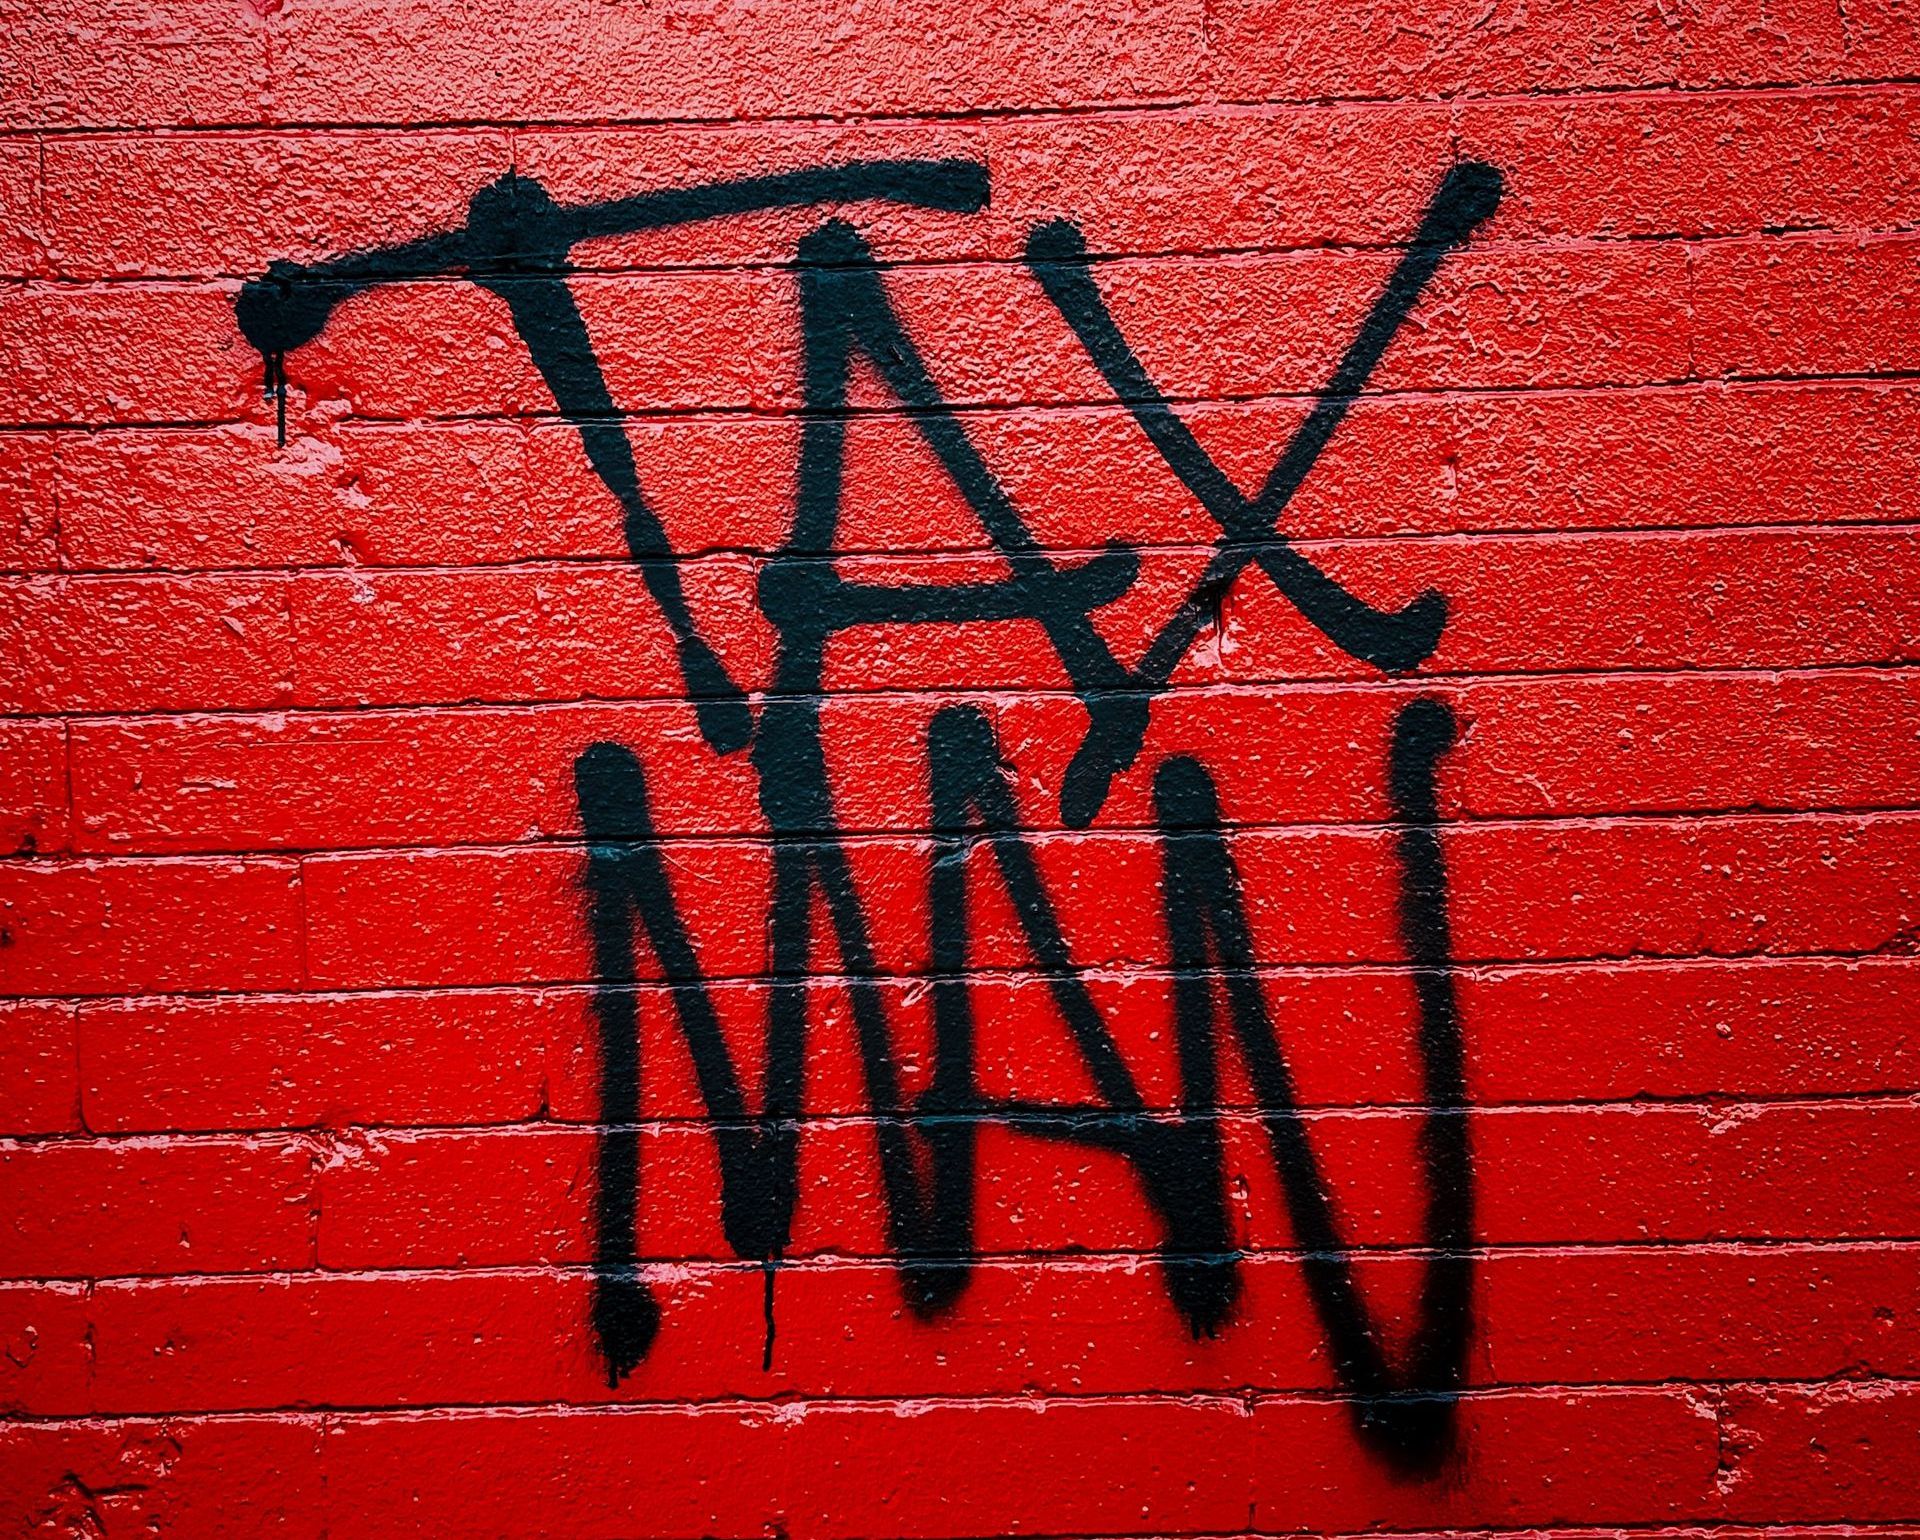 Налоговое управление США задолжало Microsoft по налогам